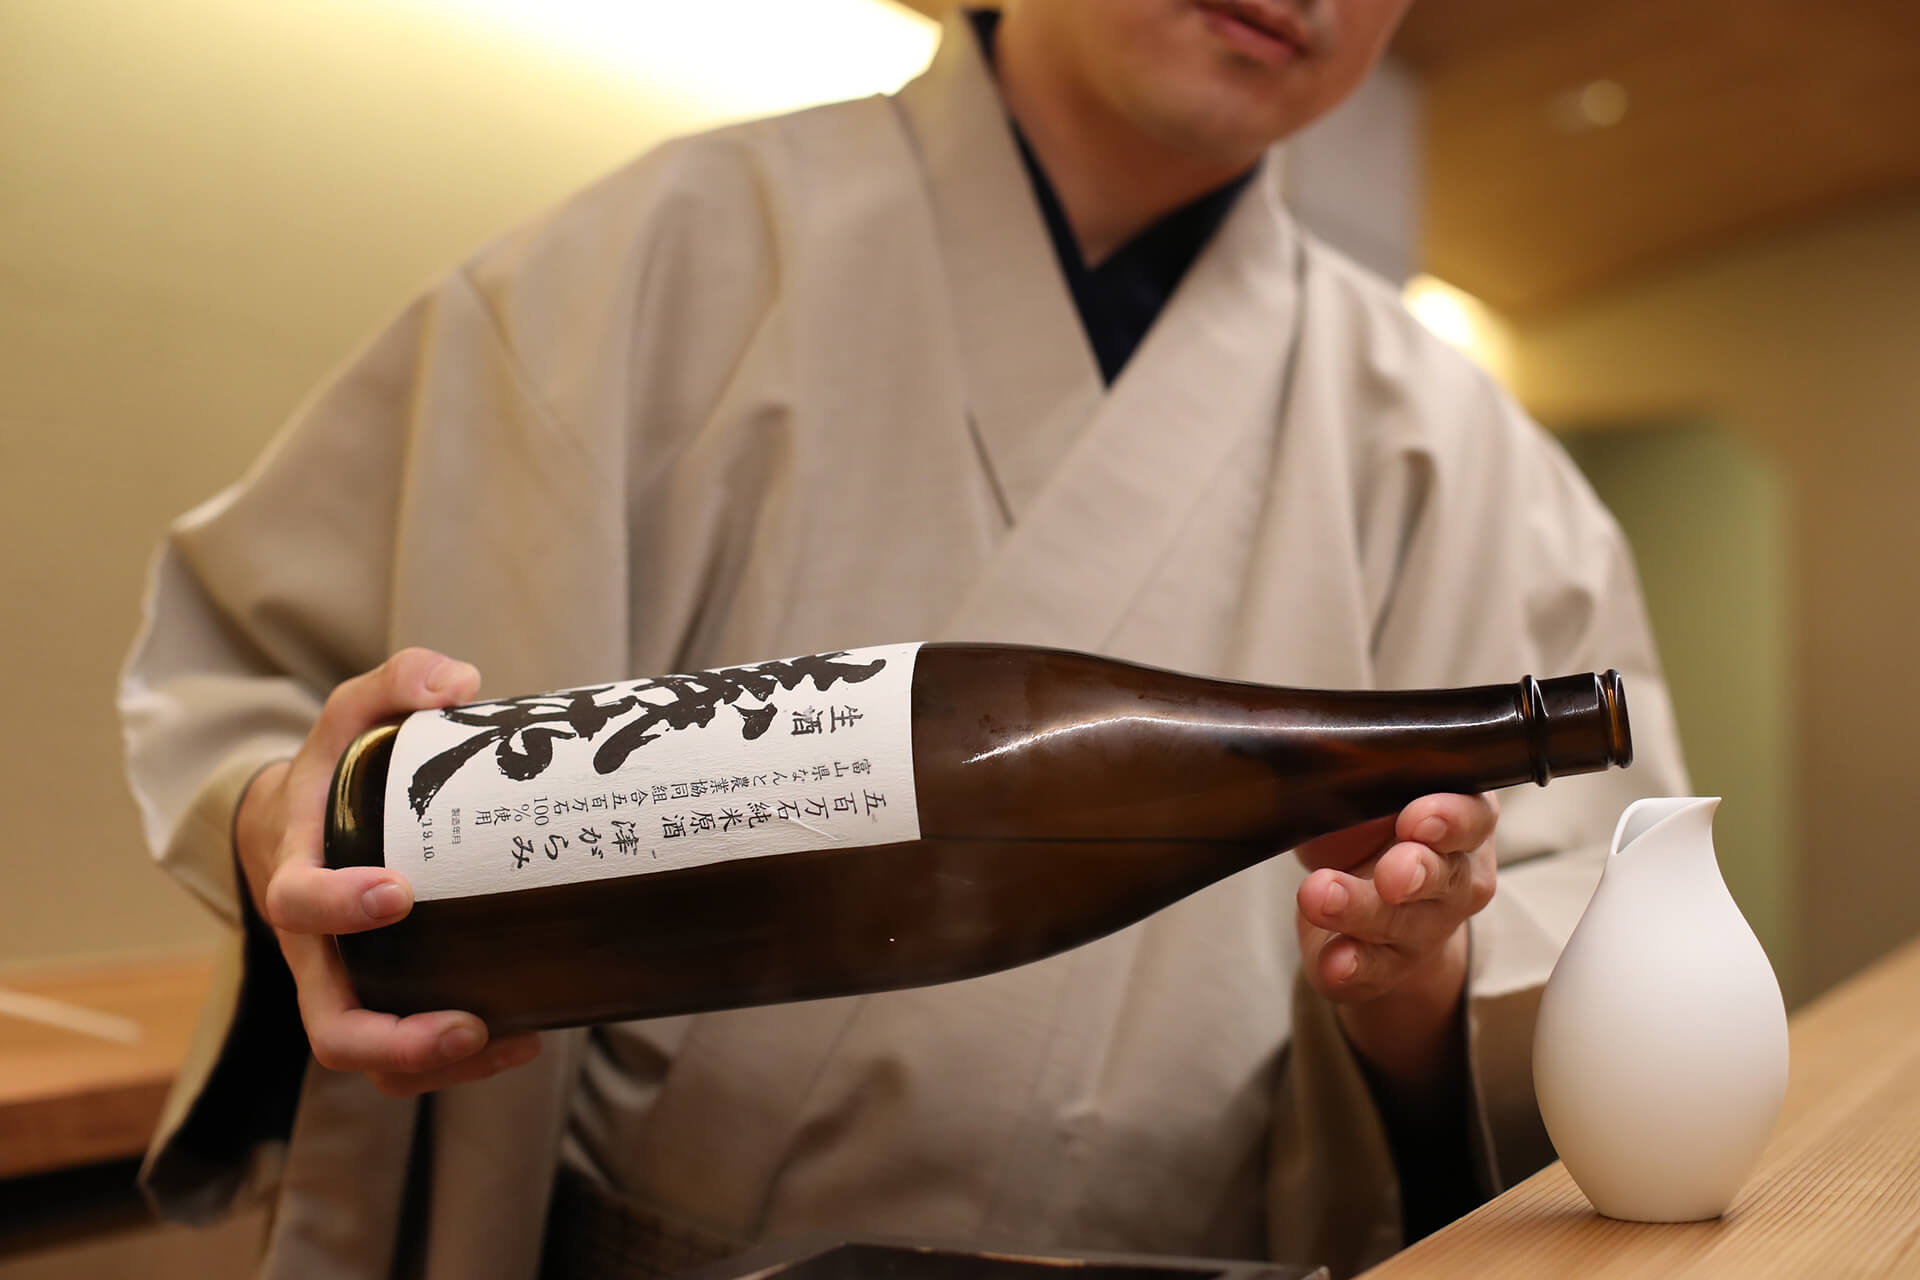 Serving sake in a Tokkuri, a sake-serving pitcher